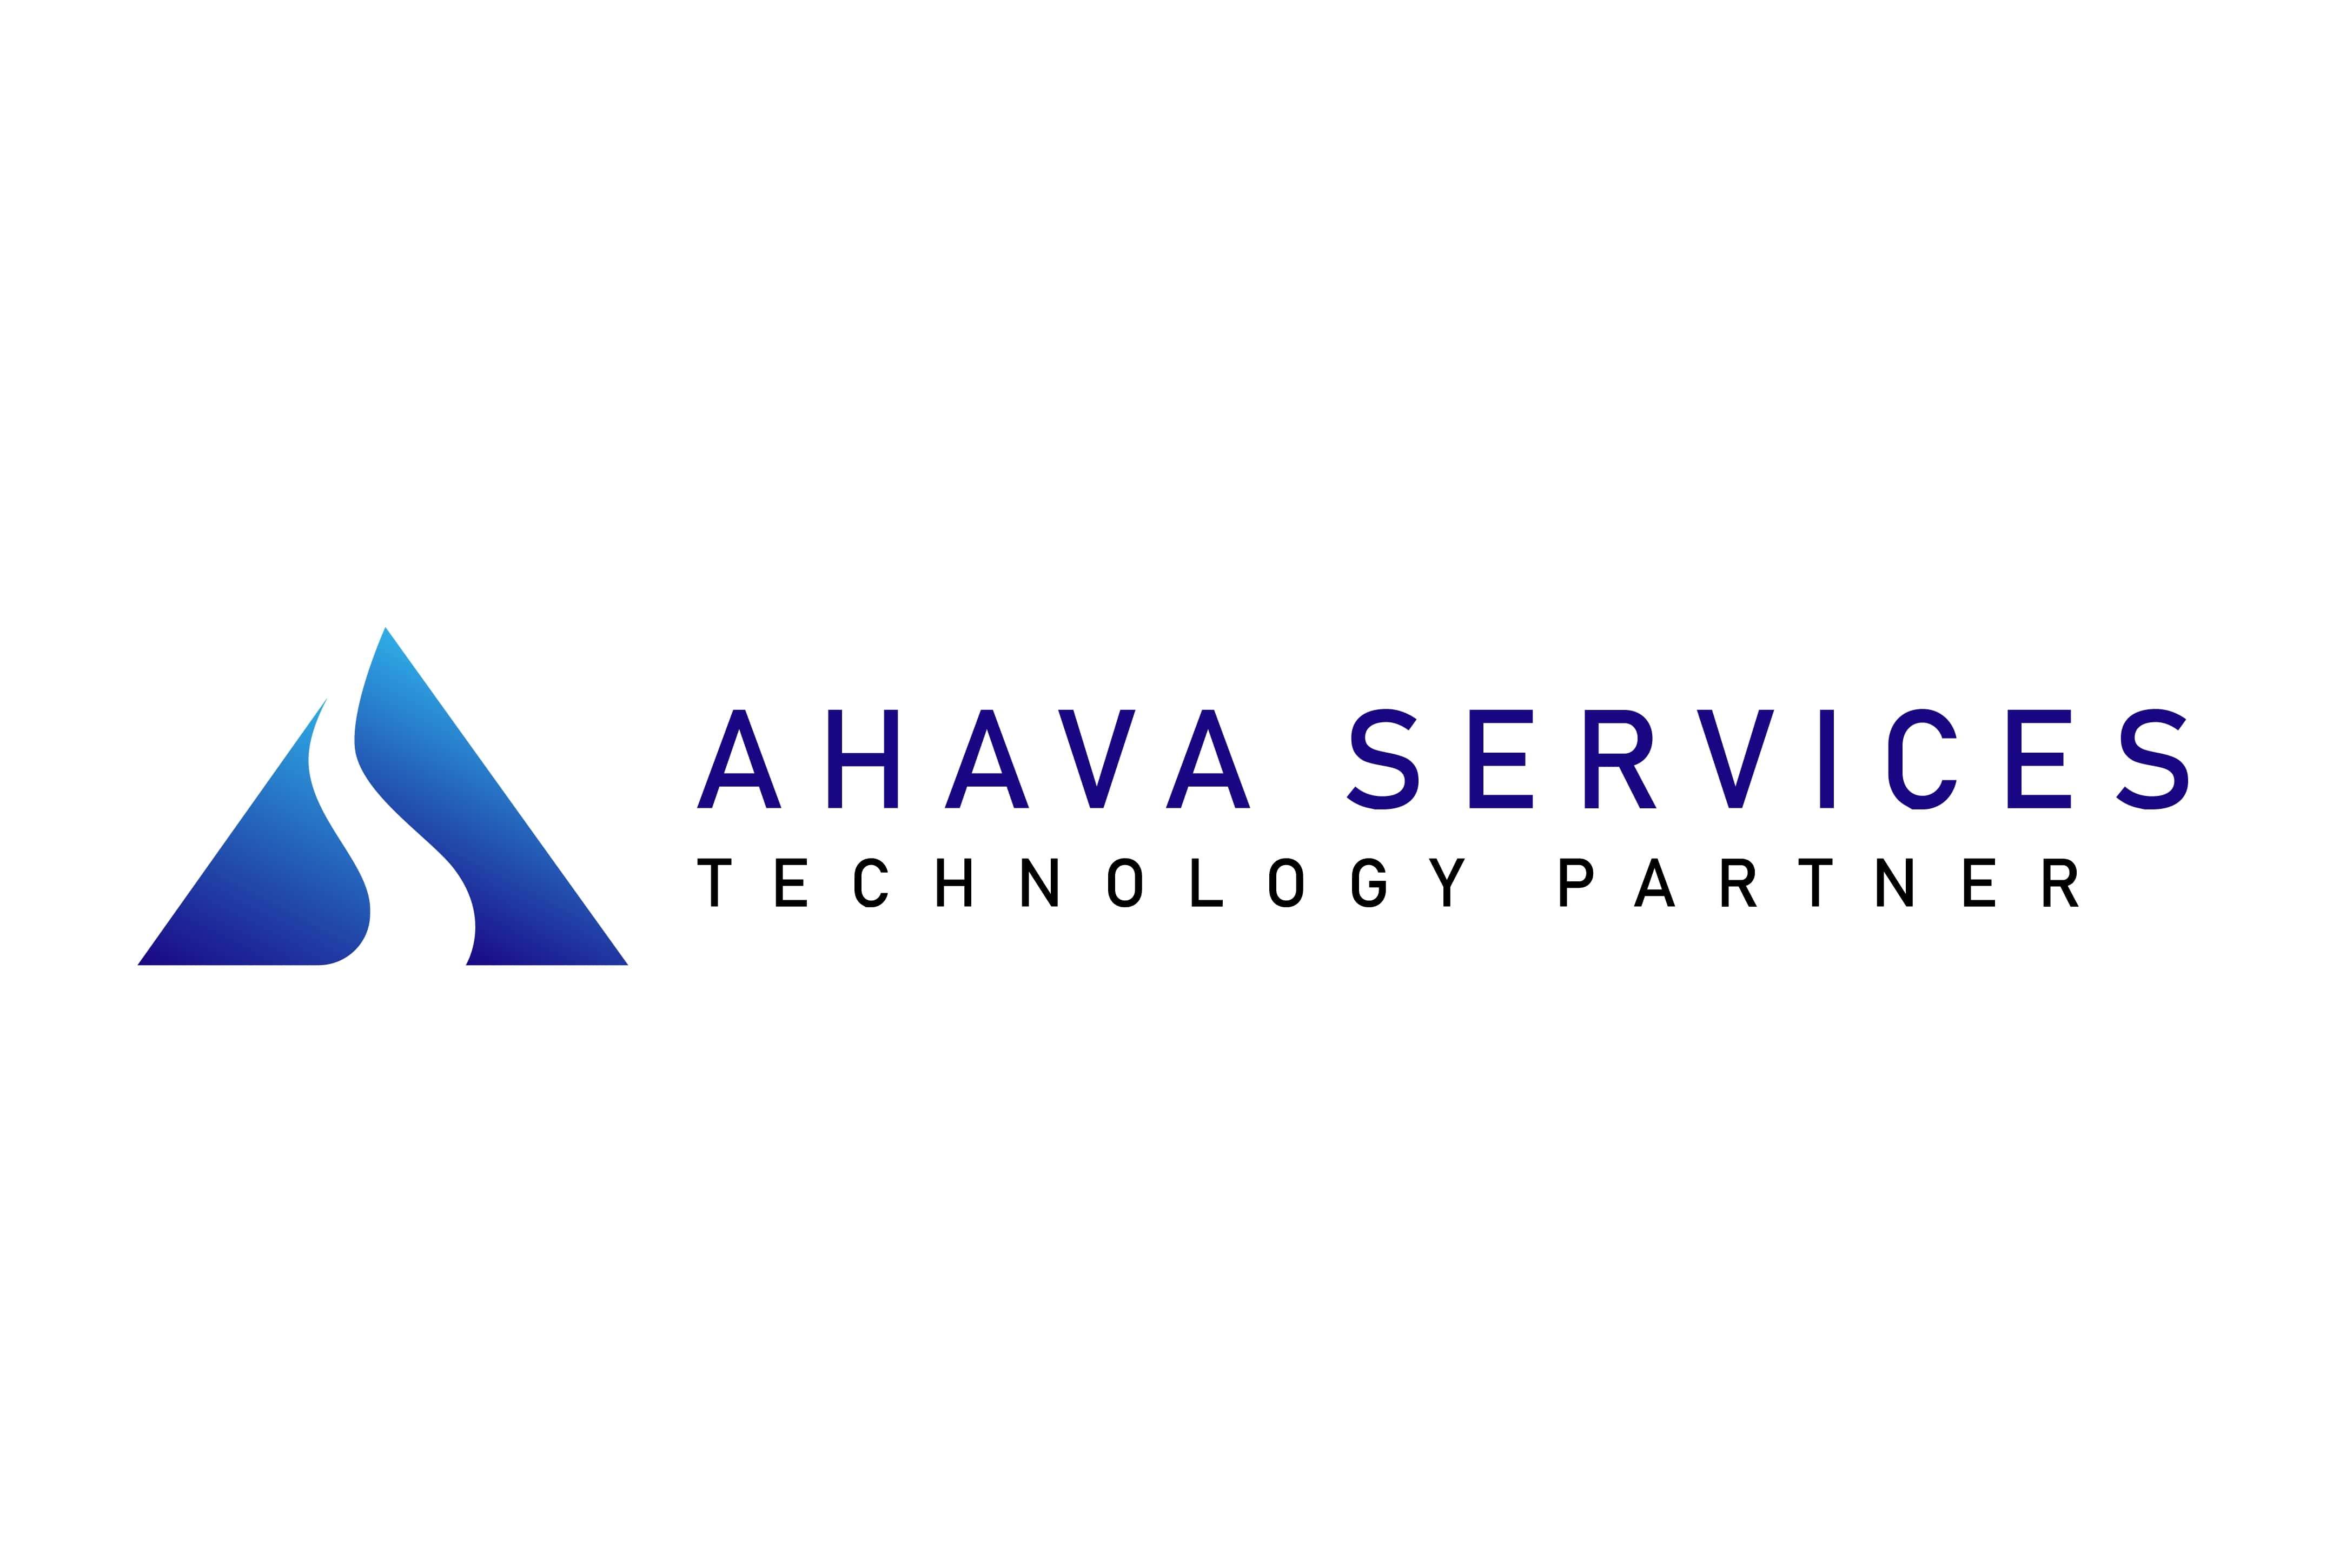 Ahava Services